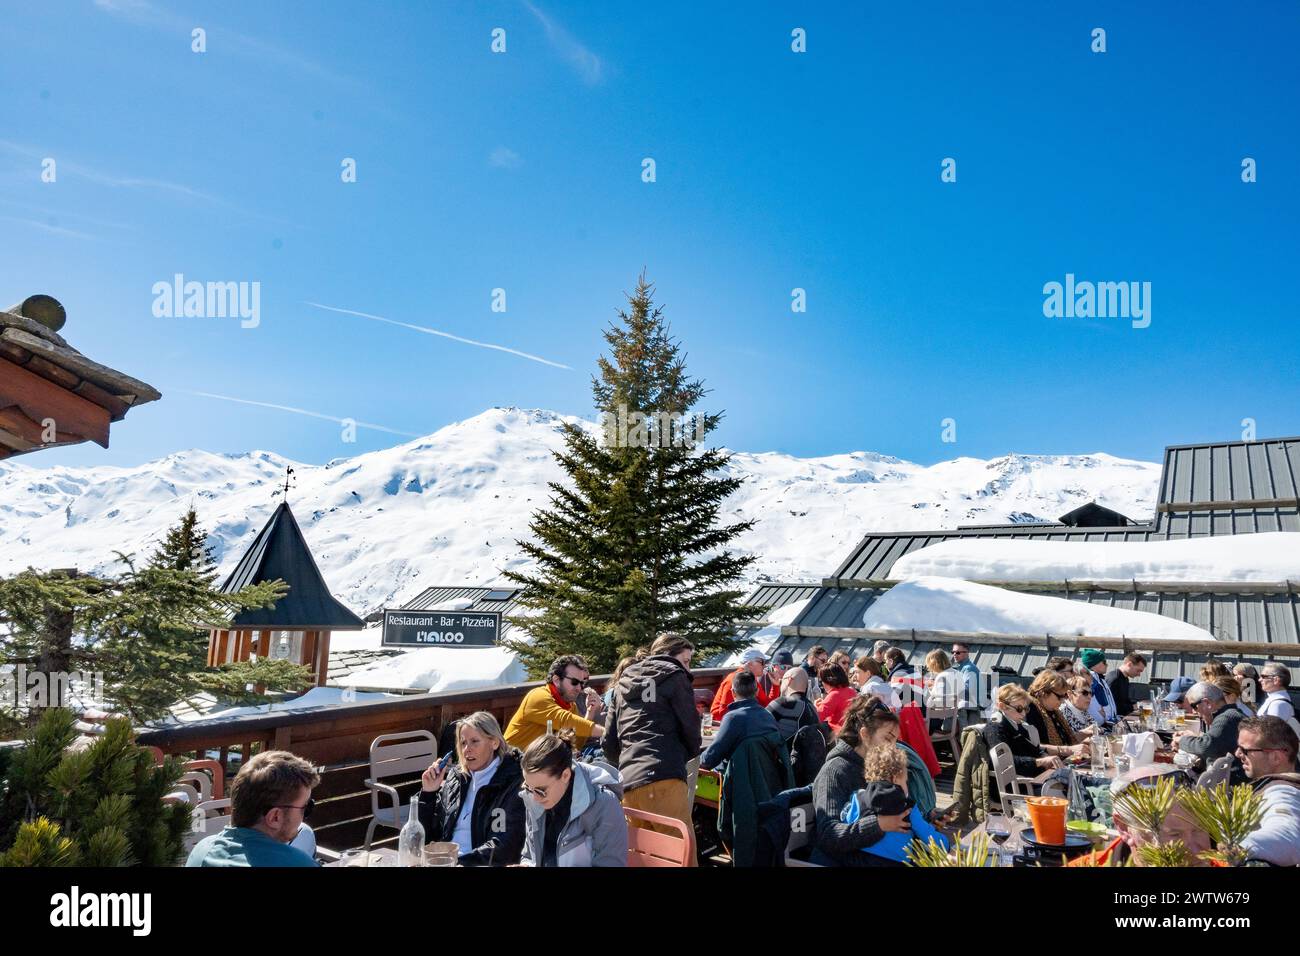 Les Menuires, France, peuple caucasien sur une terrasse de terrain de ski dans les alpes françaises, éditorial seulement. Banque D'Images